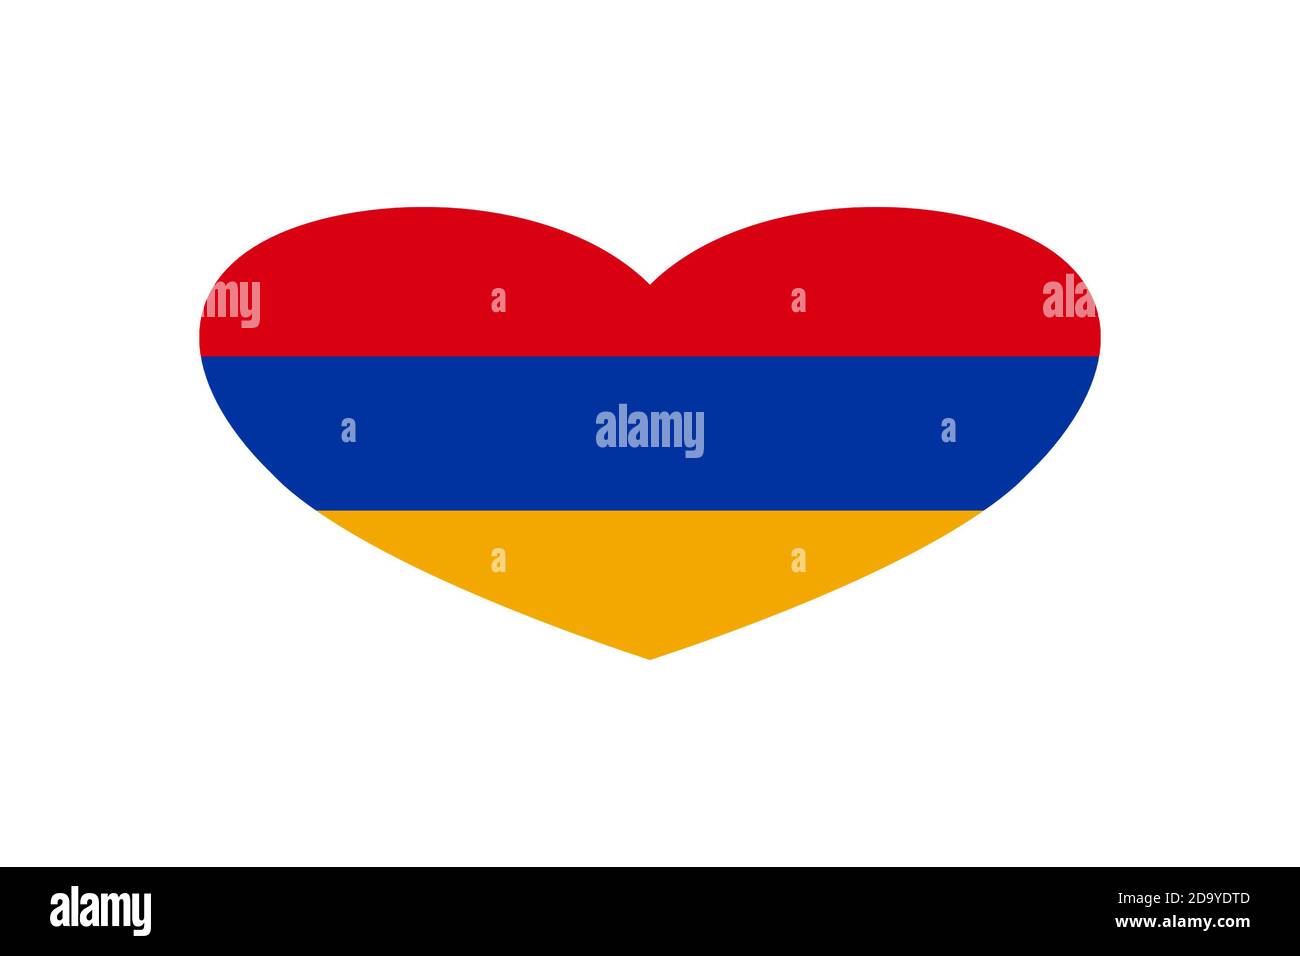 Armenia Flag Stock Illustration - Download Image Now - Armenia - Country, Armenian  Flag, Asia - iStock